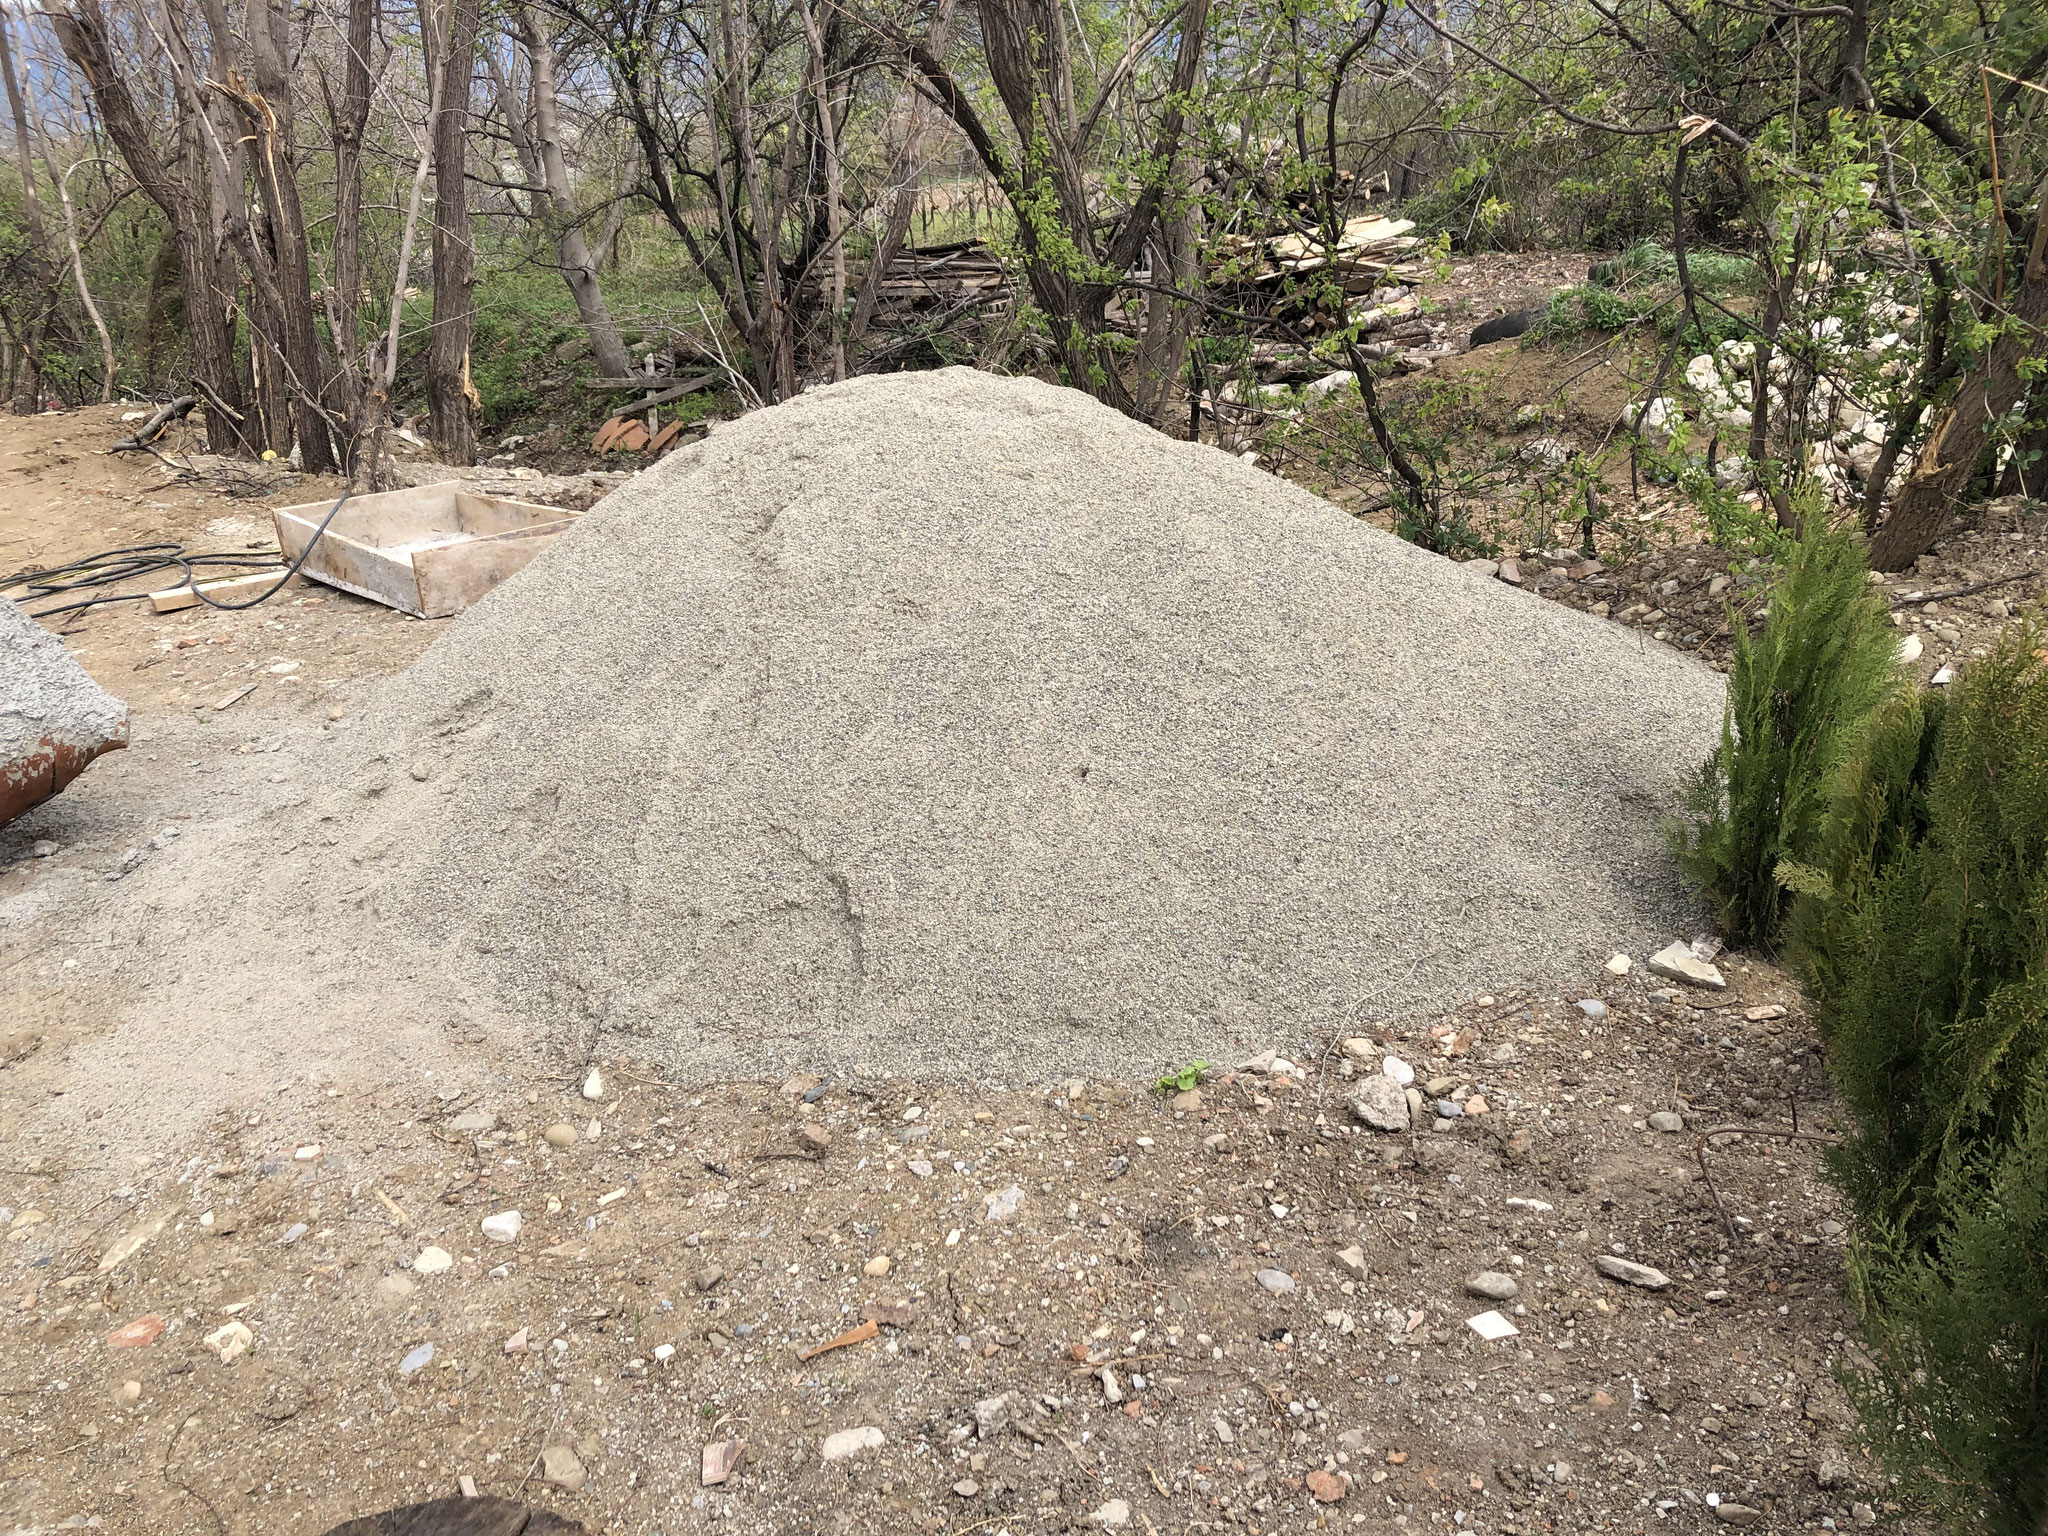 limestone waar de Qvevri mee worden ingesmeerd vooraleer ze in de grond gaan